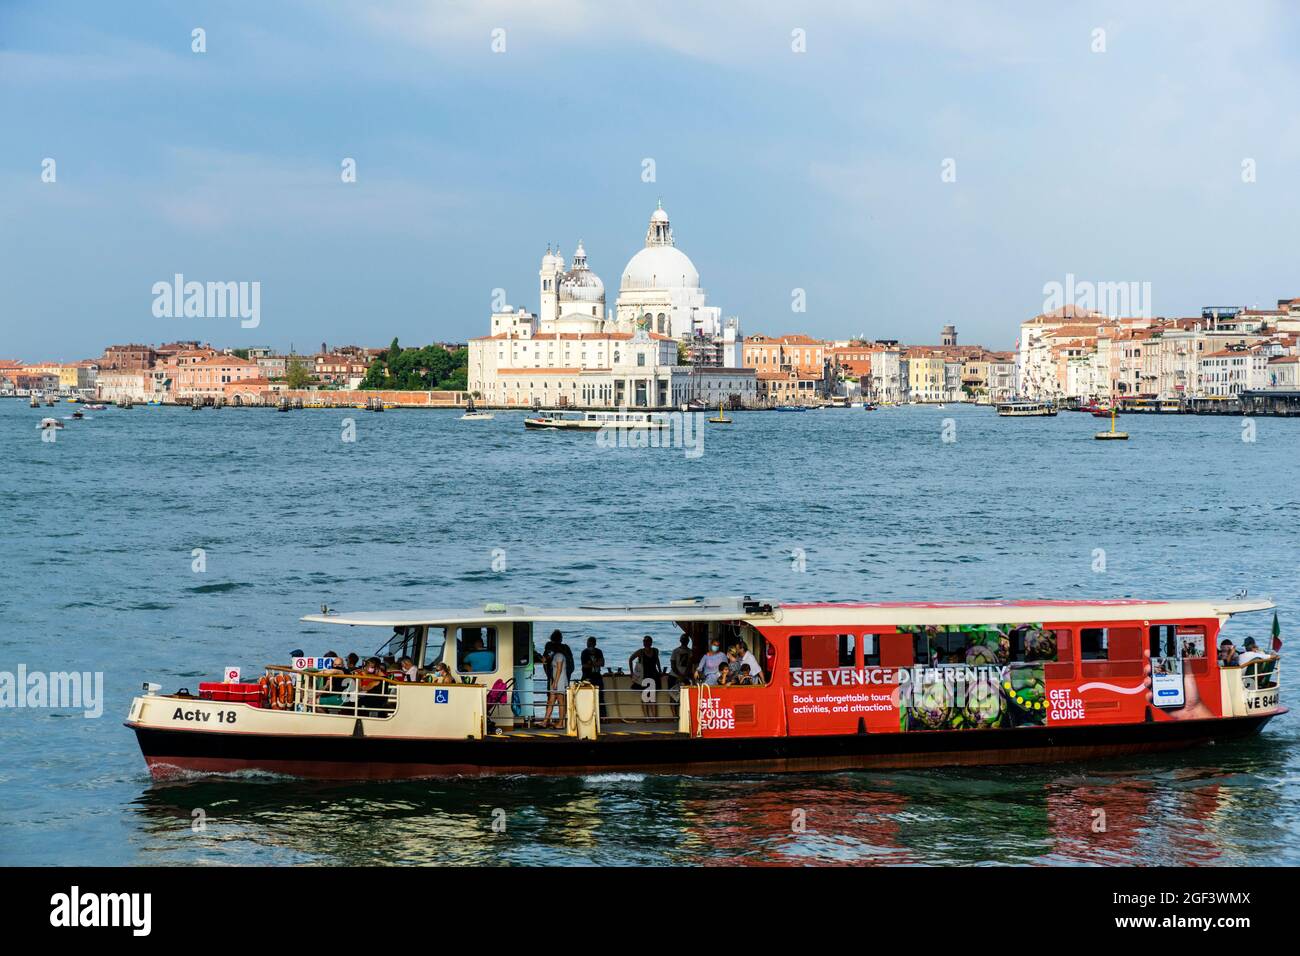 Venice laguna with Santa Maria della Salute and passenger boats Stock Photo